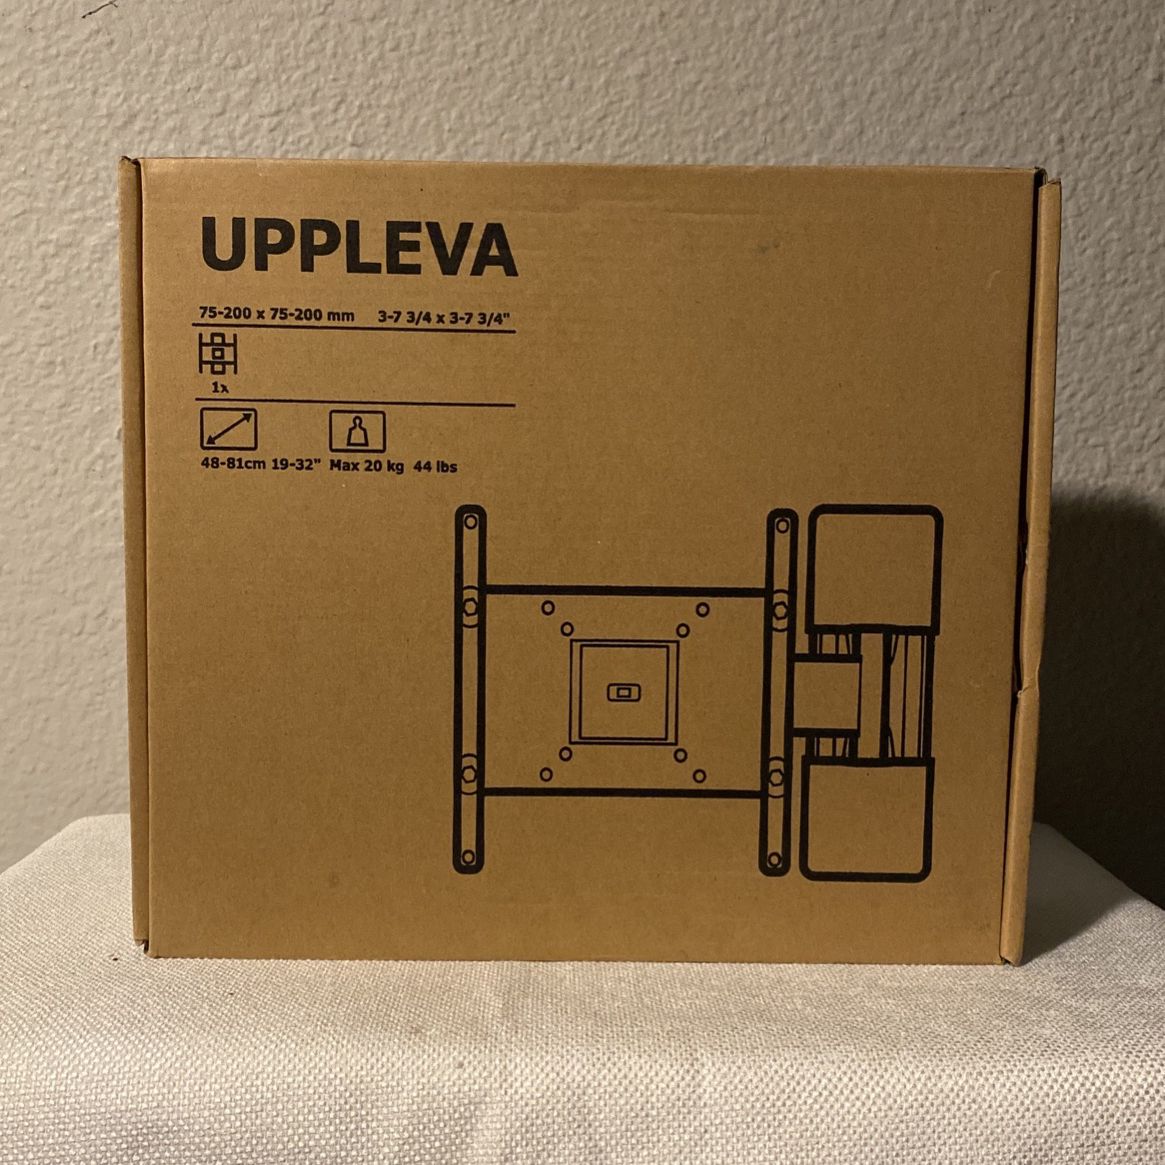 IKEA Uppleva Tv Wall Mount